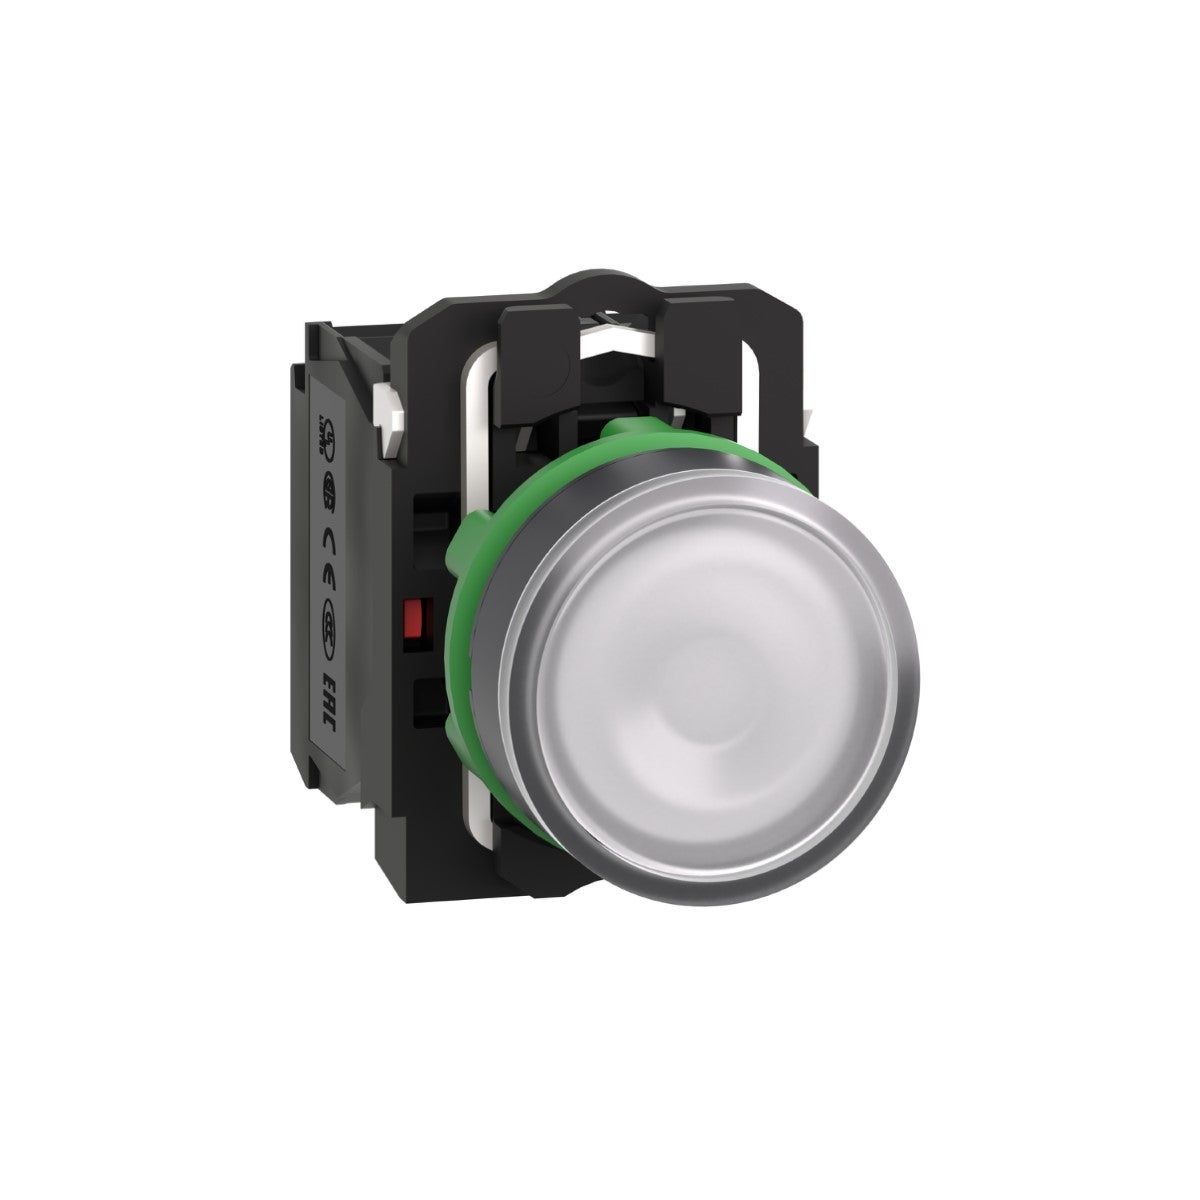 Illuminated push button, Harmony XB5, plastic, flush, white, 22mm, universal LED, plain lens, 1NO + 1NC, 110...120V AC